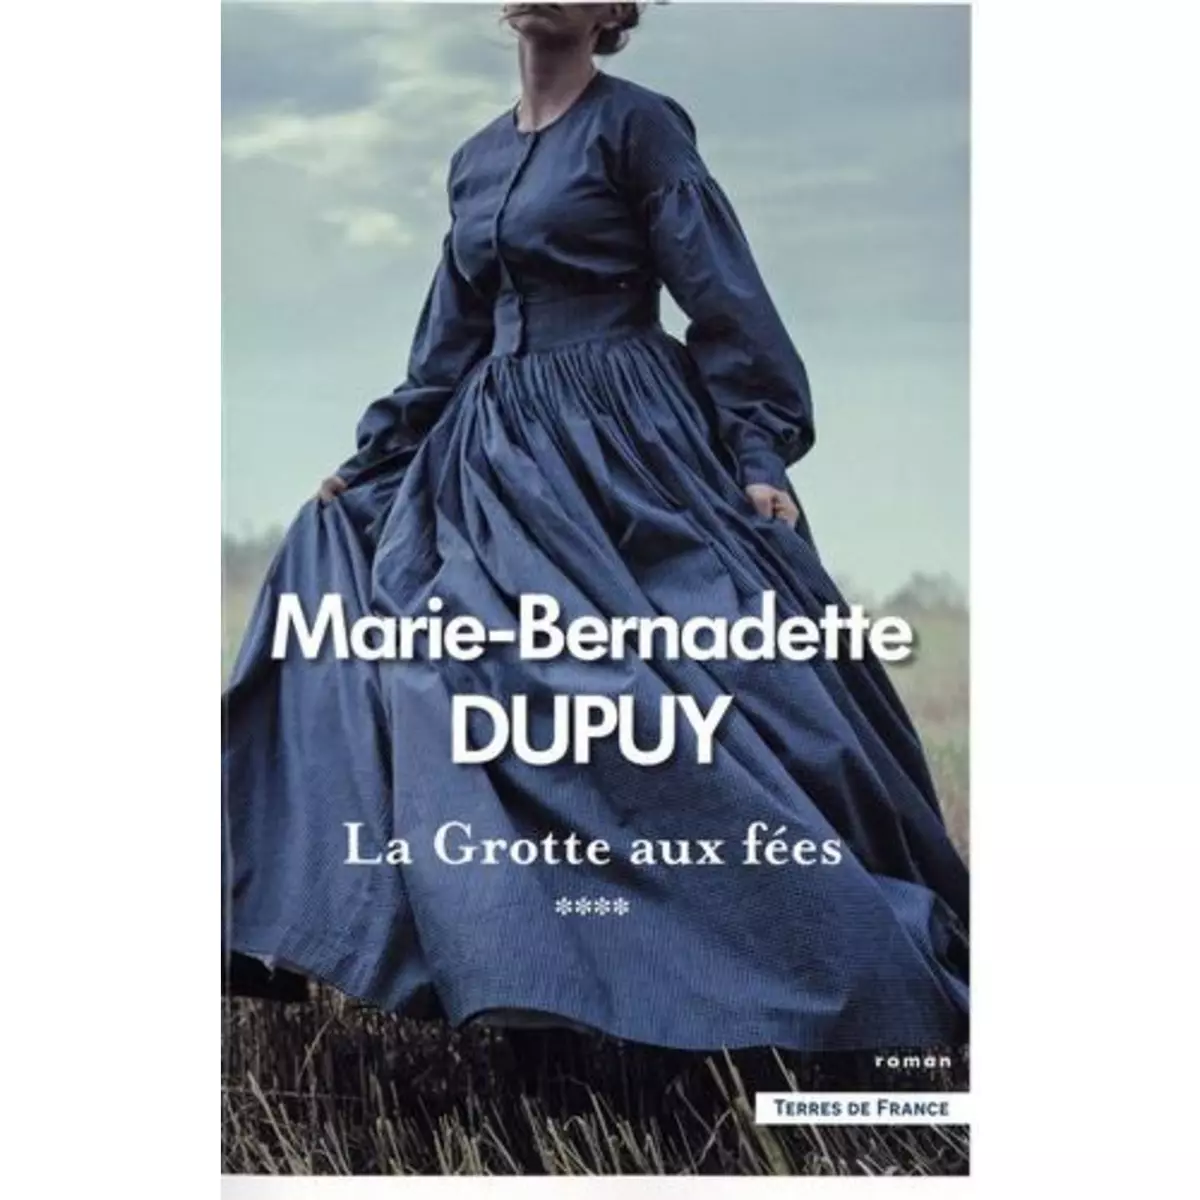  LE MOULIN DU LOUP TOME 4 : LA GROTTE AUX FEES, Dupuy Marie-Bernadette